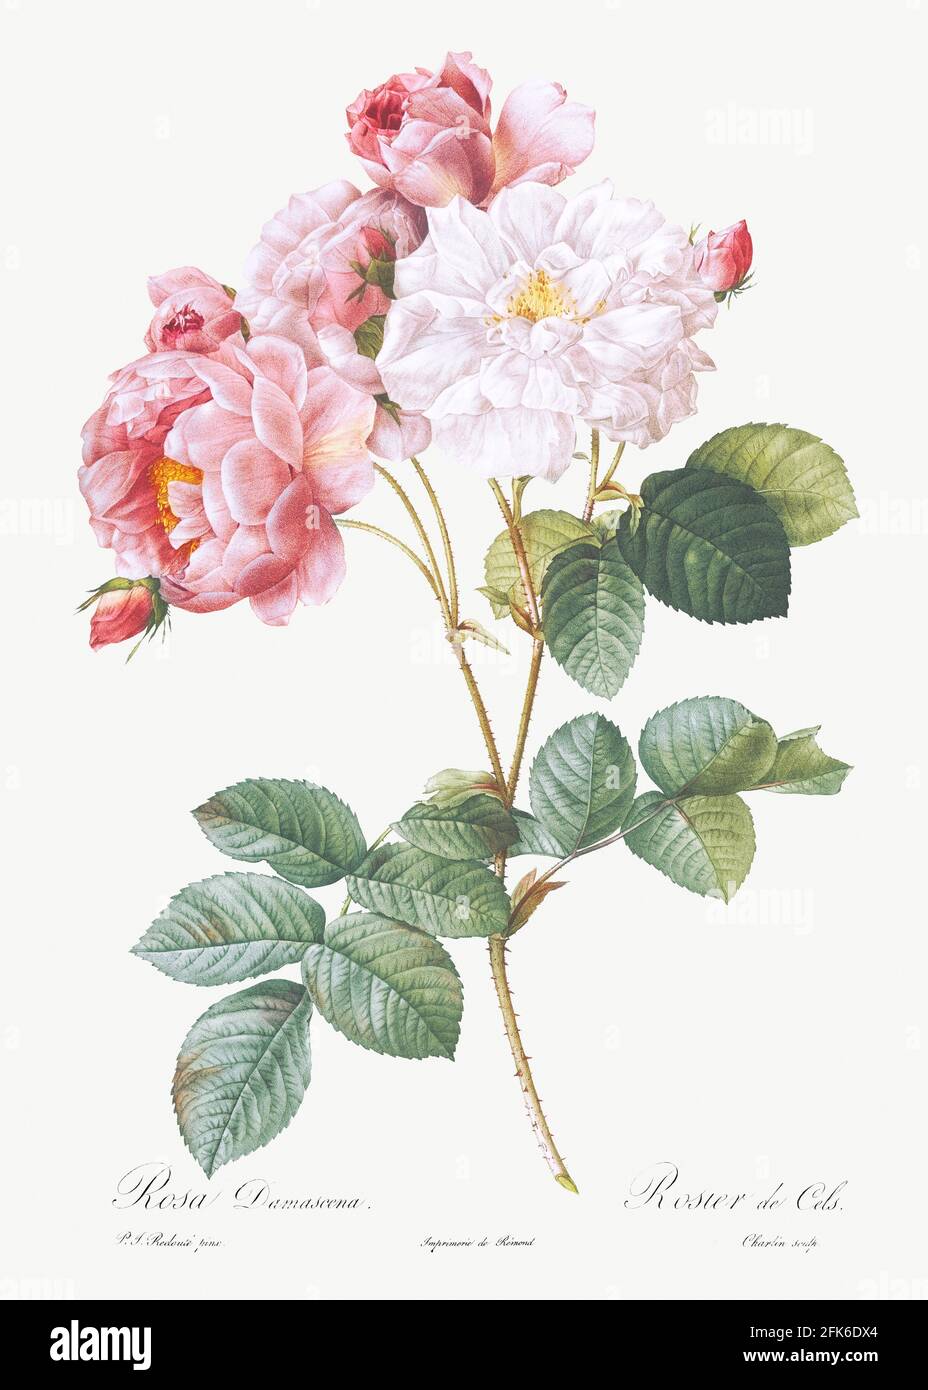 Rosa × damascena, rosebush (Rosa damascena) di Les Roses (1817&ndash;1824) di Pierre-Joseph Redouté. Originale della Biblioteca del Congresso. Digitall Foto Stock